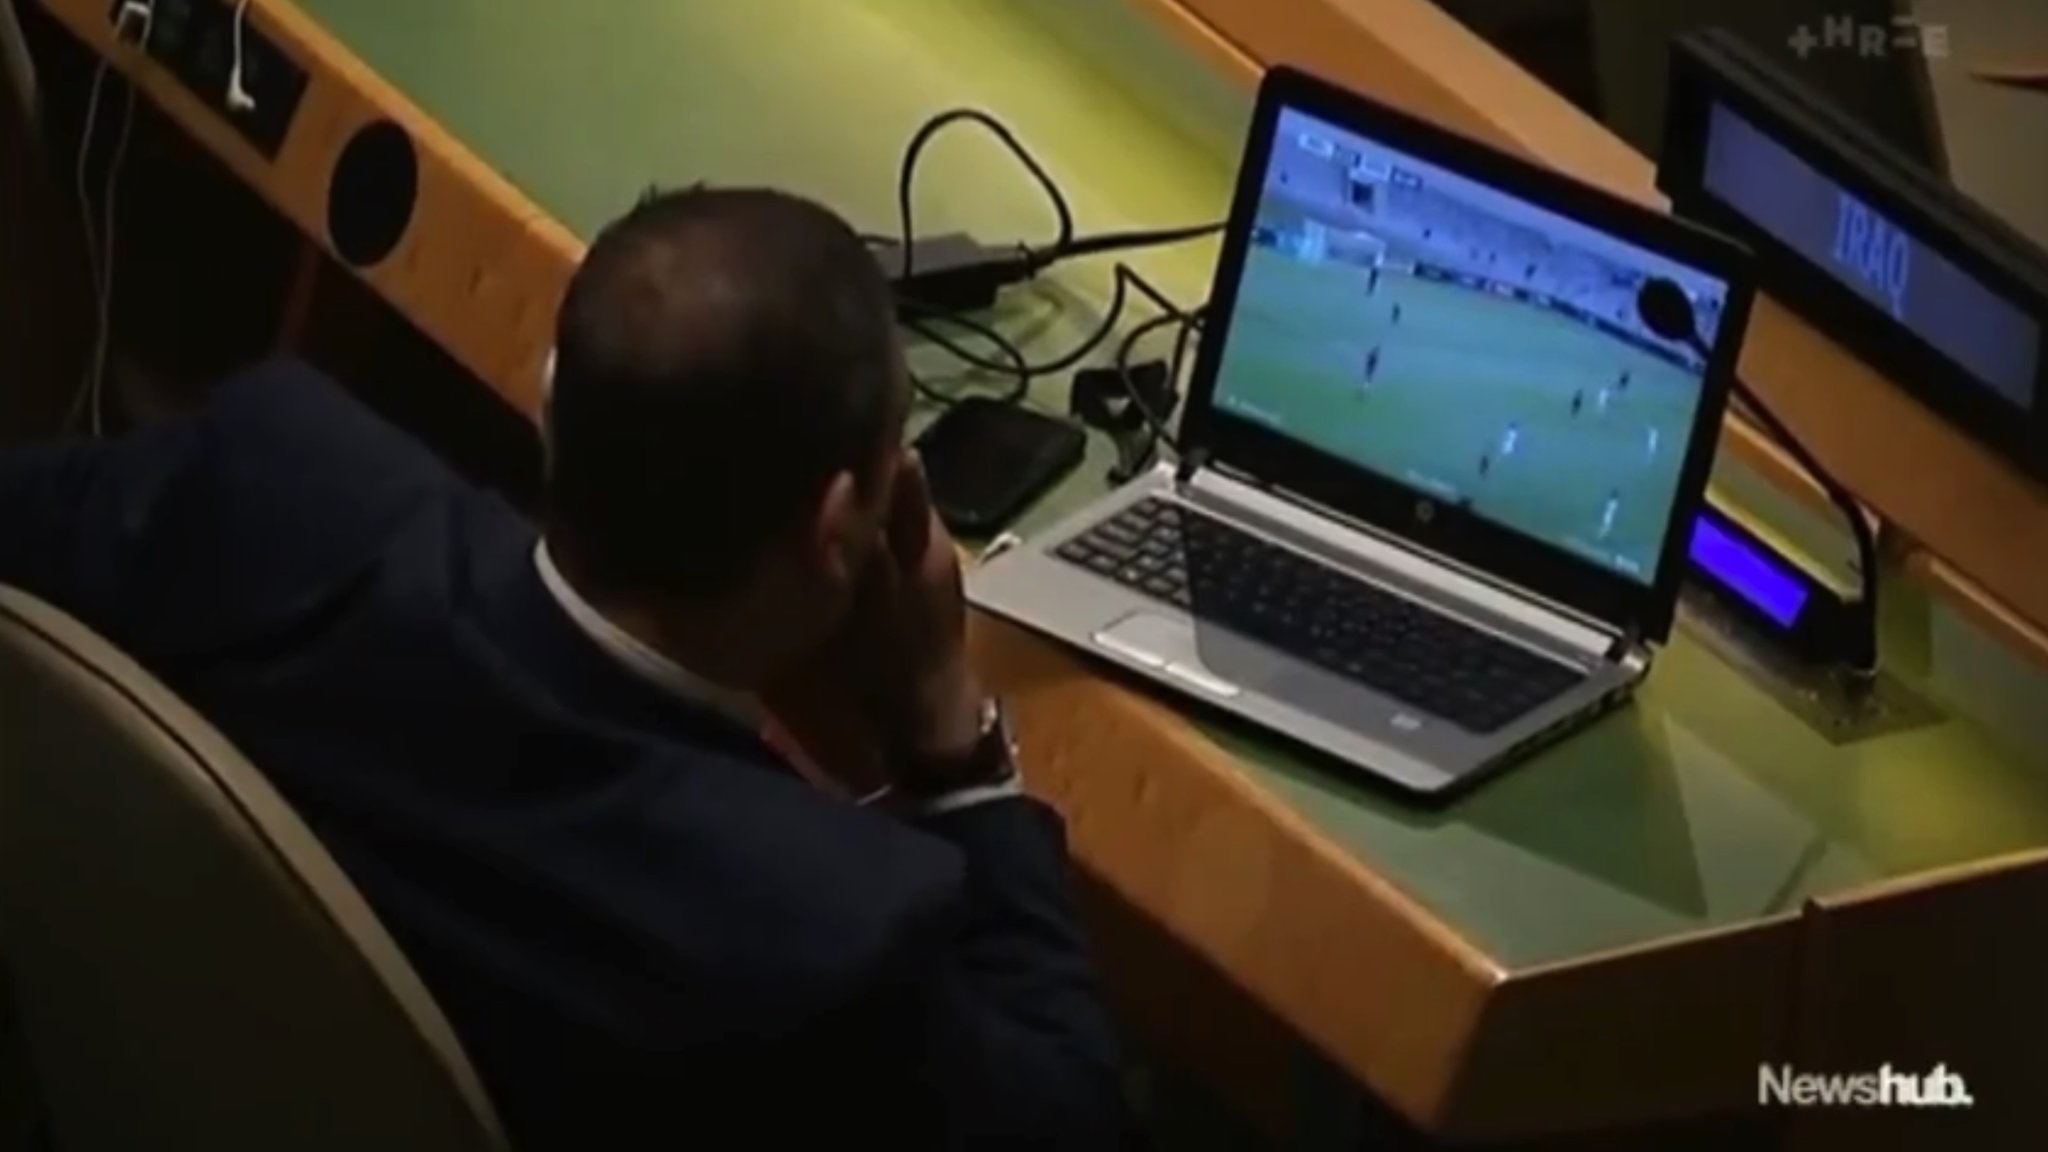 دبلوماسي عراقي يشاهد مباراة كرة قدم أثناء اجتماعات الجمعية العامة للأمم المتحدة